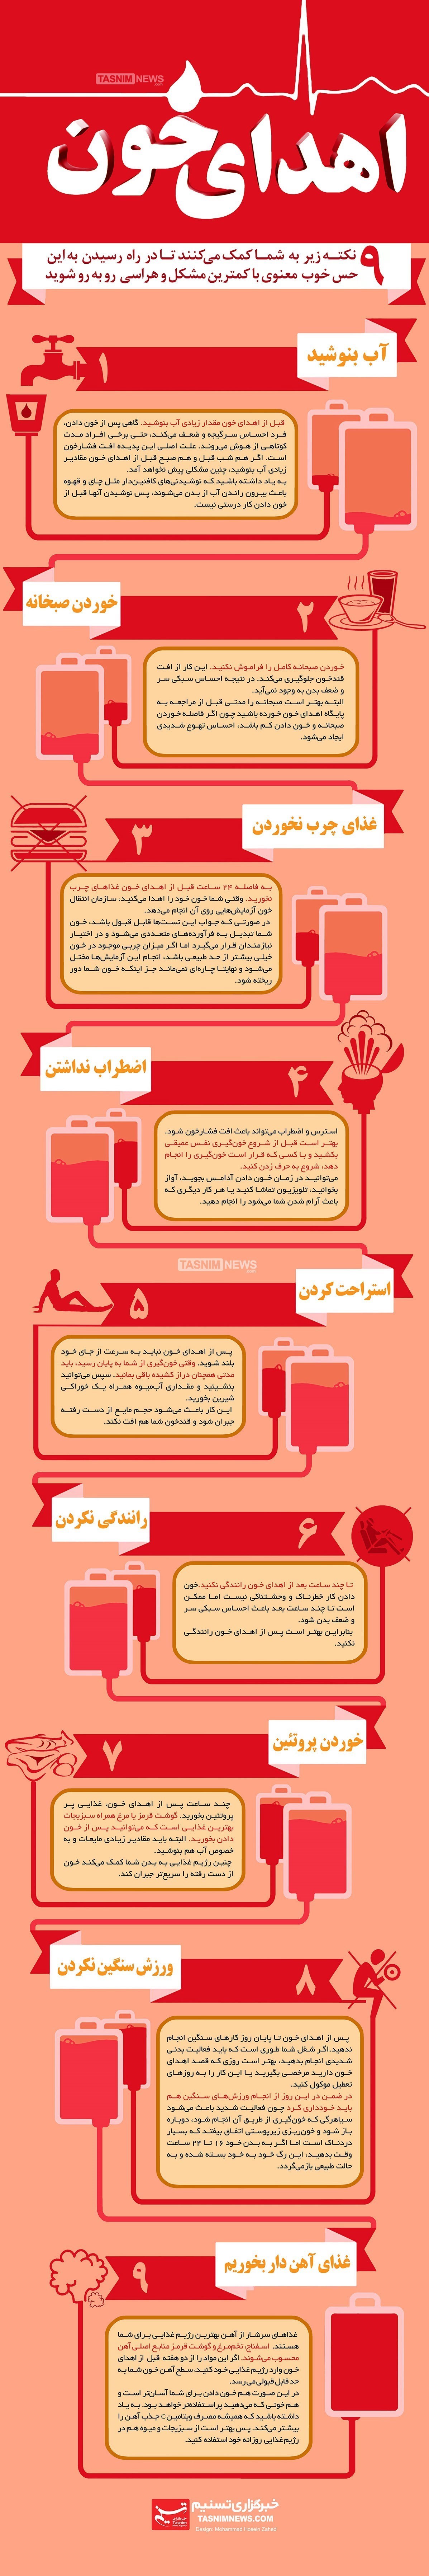 انفوگرافی-اهدای خون